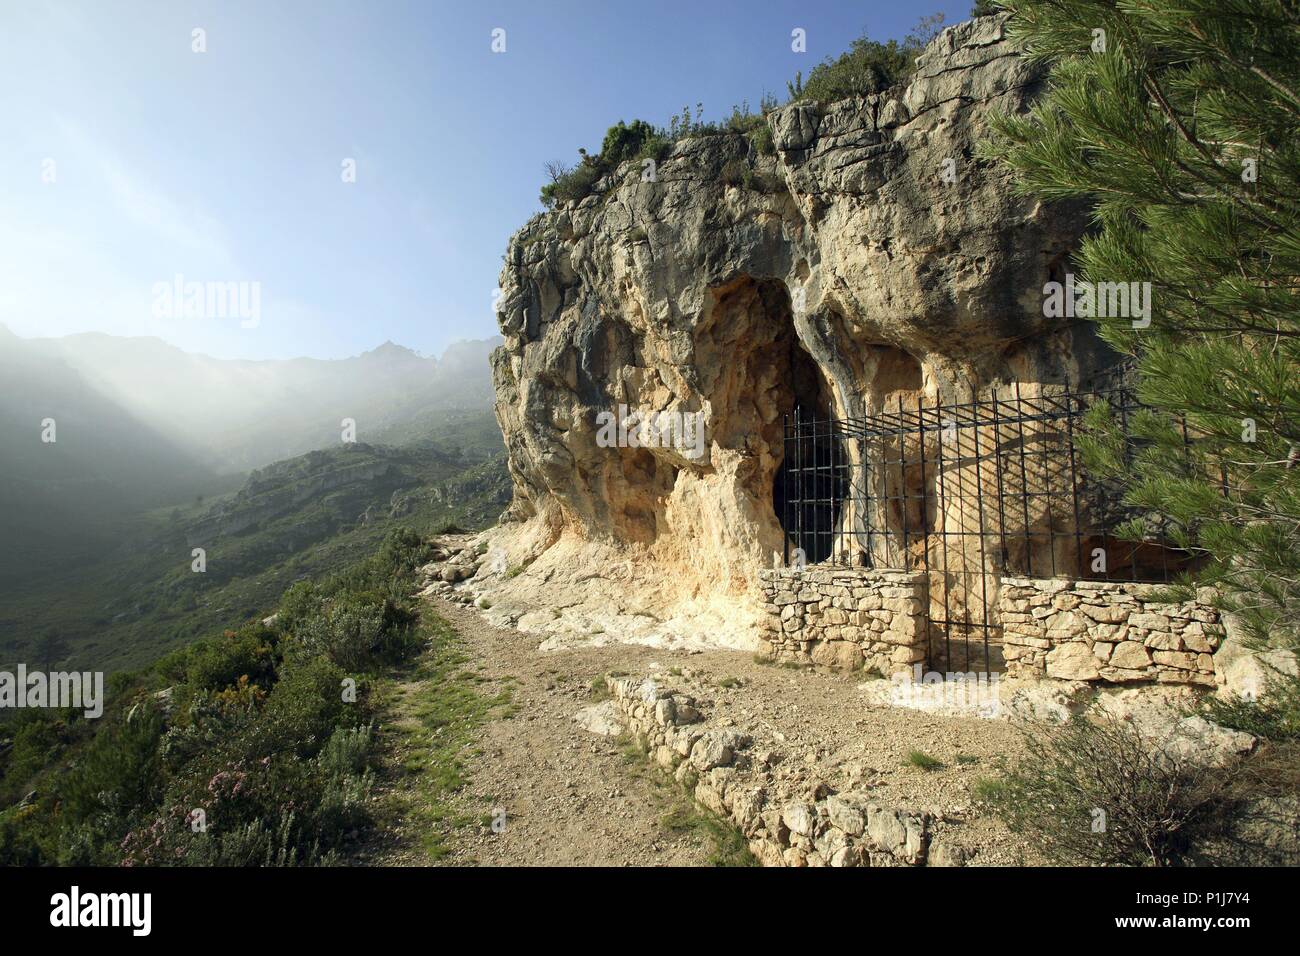 Spagna - Catalogna - Baix Ebre (distretto) - Tarragona. El Perelló; Cova / Cuevas de Cabra- Freixet (pinturas rupestres) ; Sierra / Serra del Boix. Foto Stock